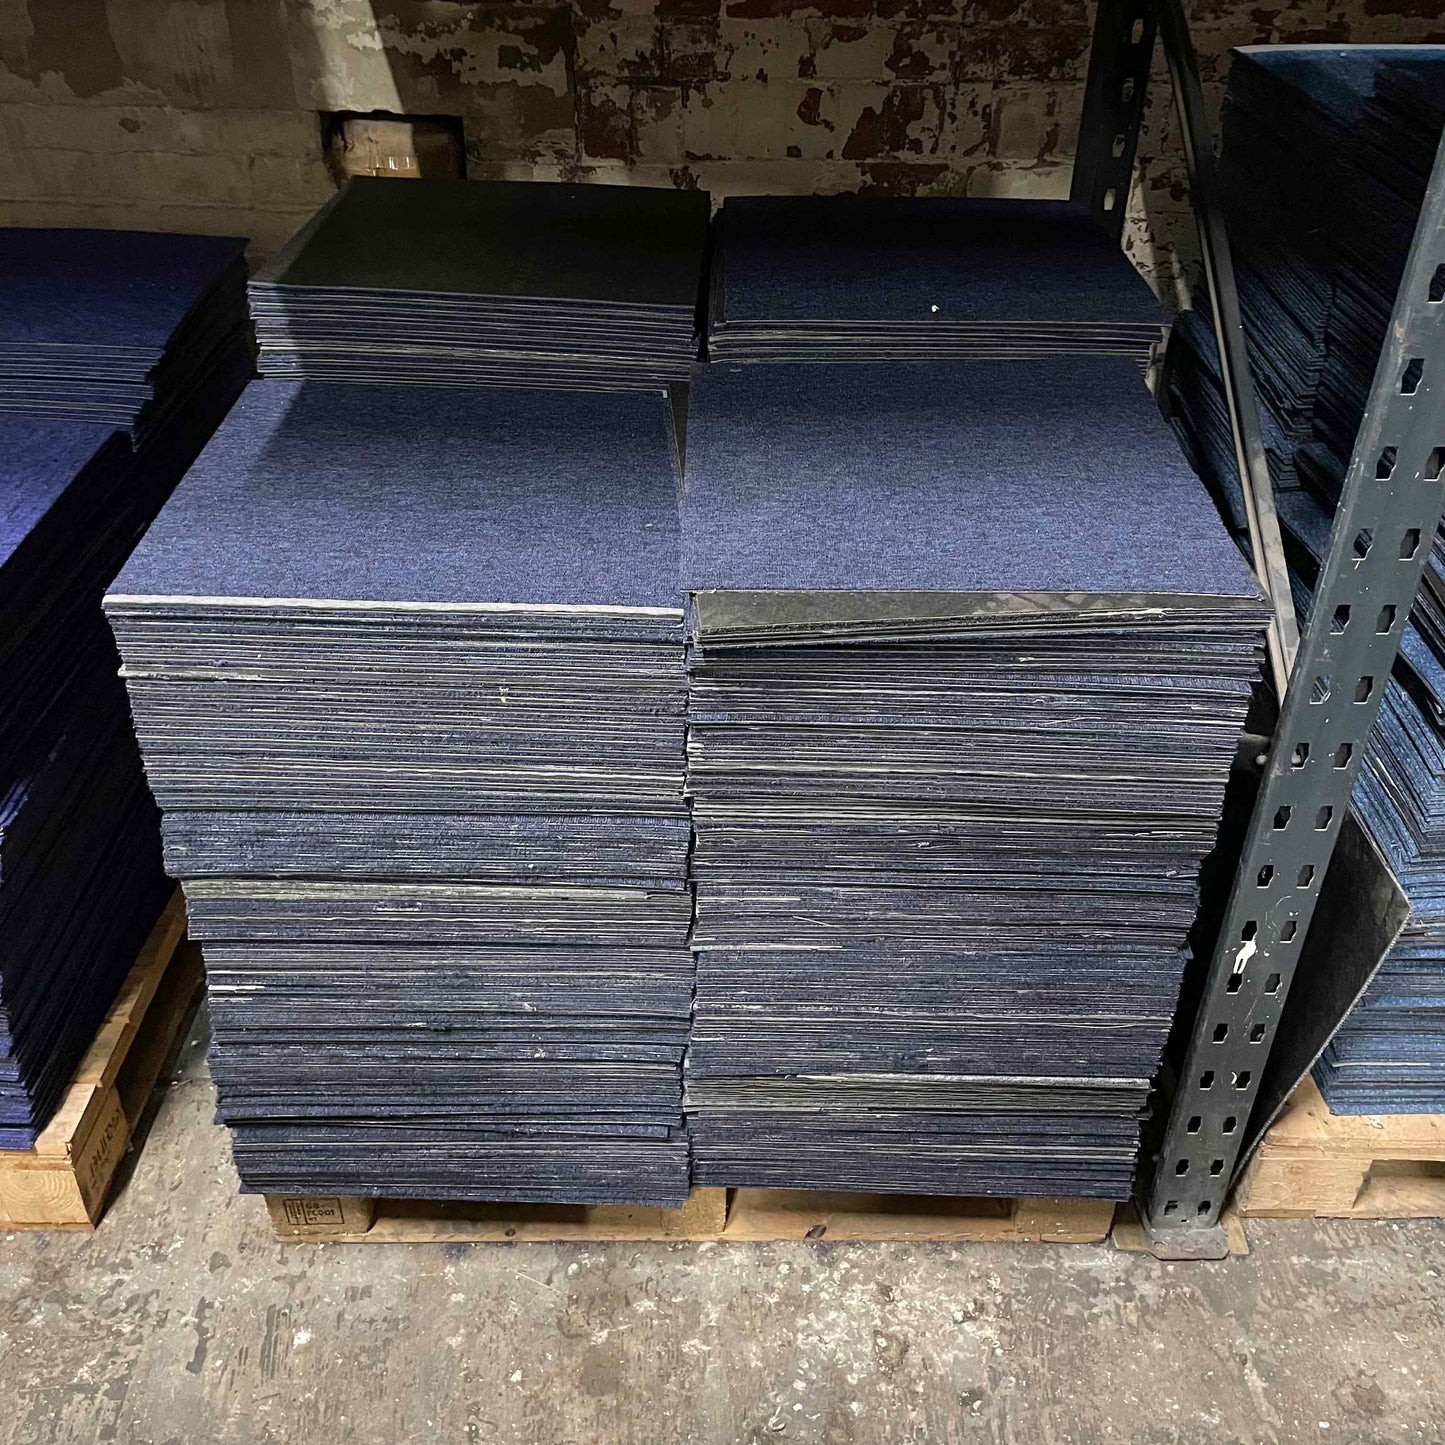 Dark blue carpet tiles, piled up on a pallet